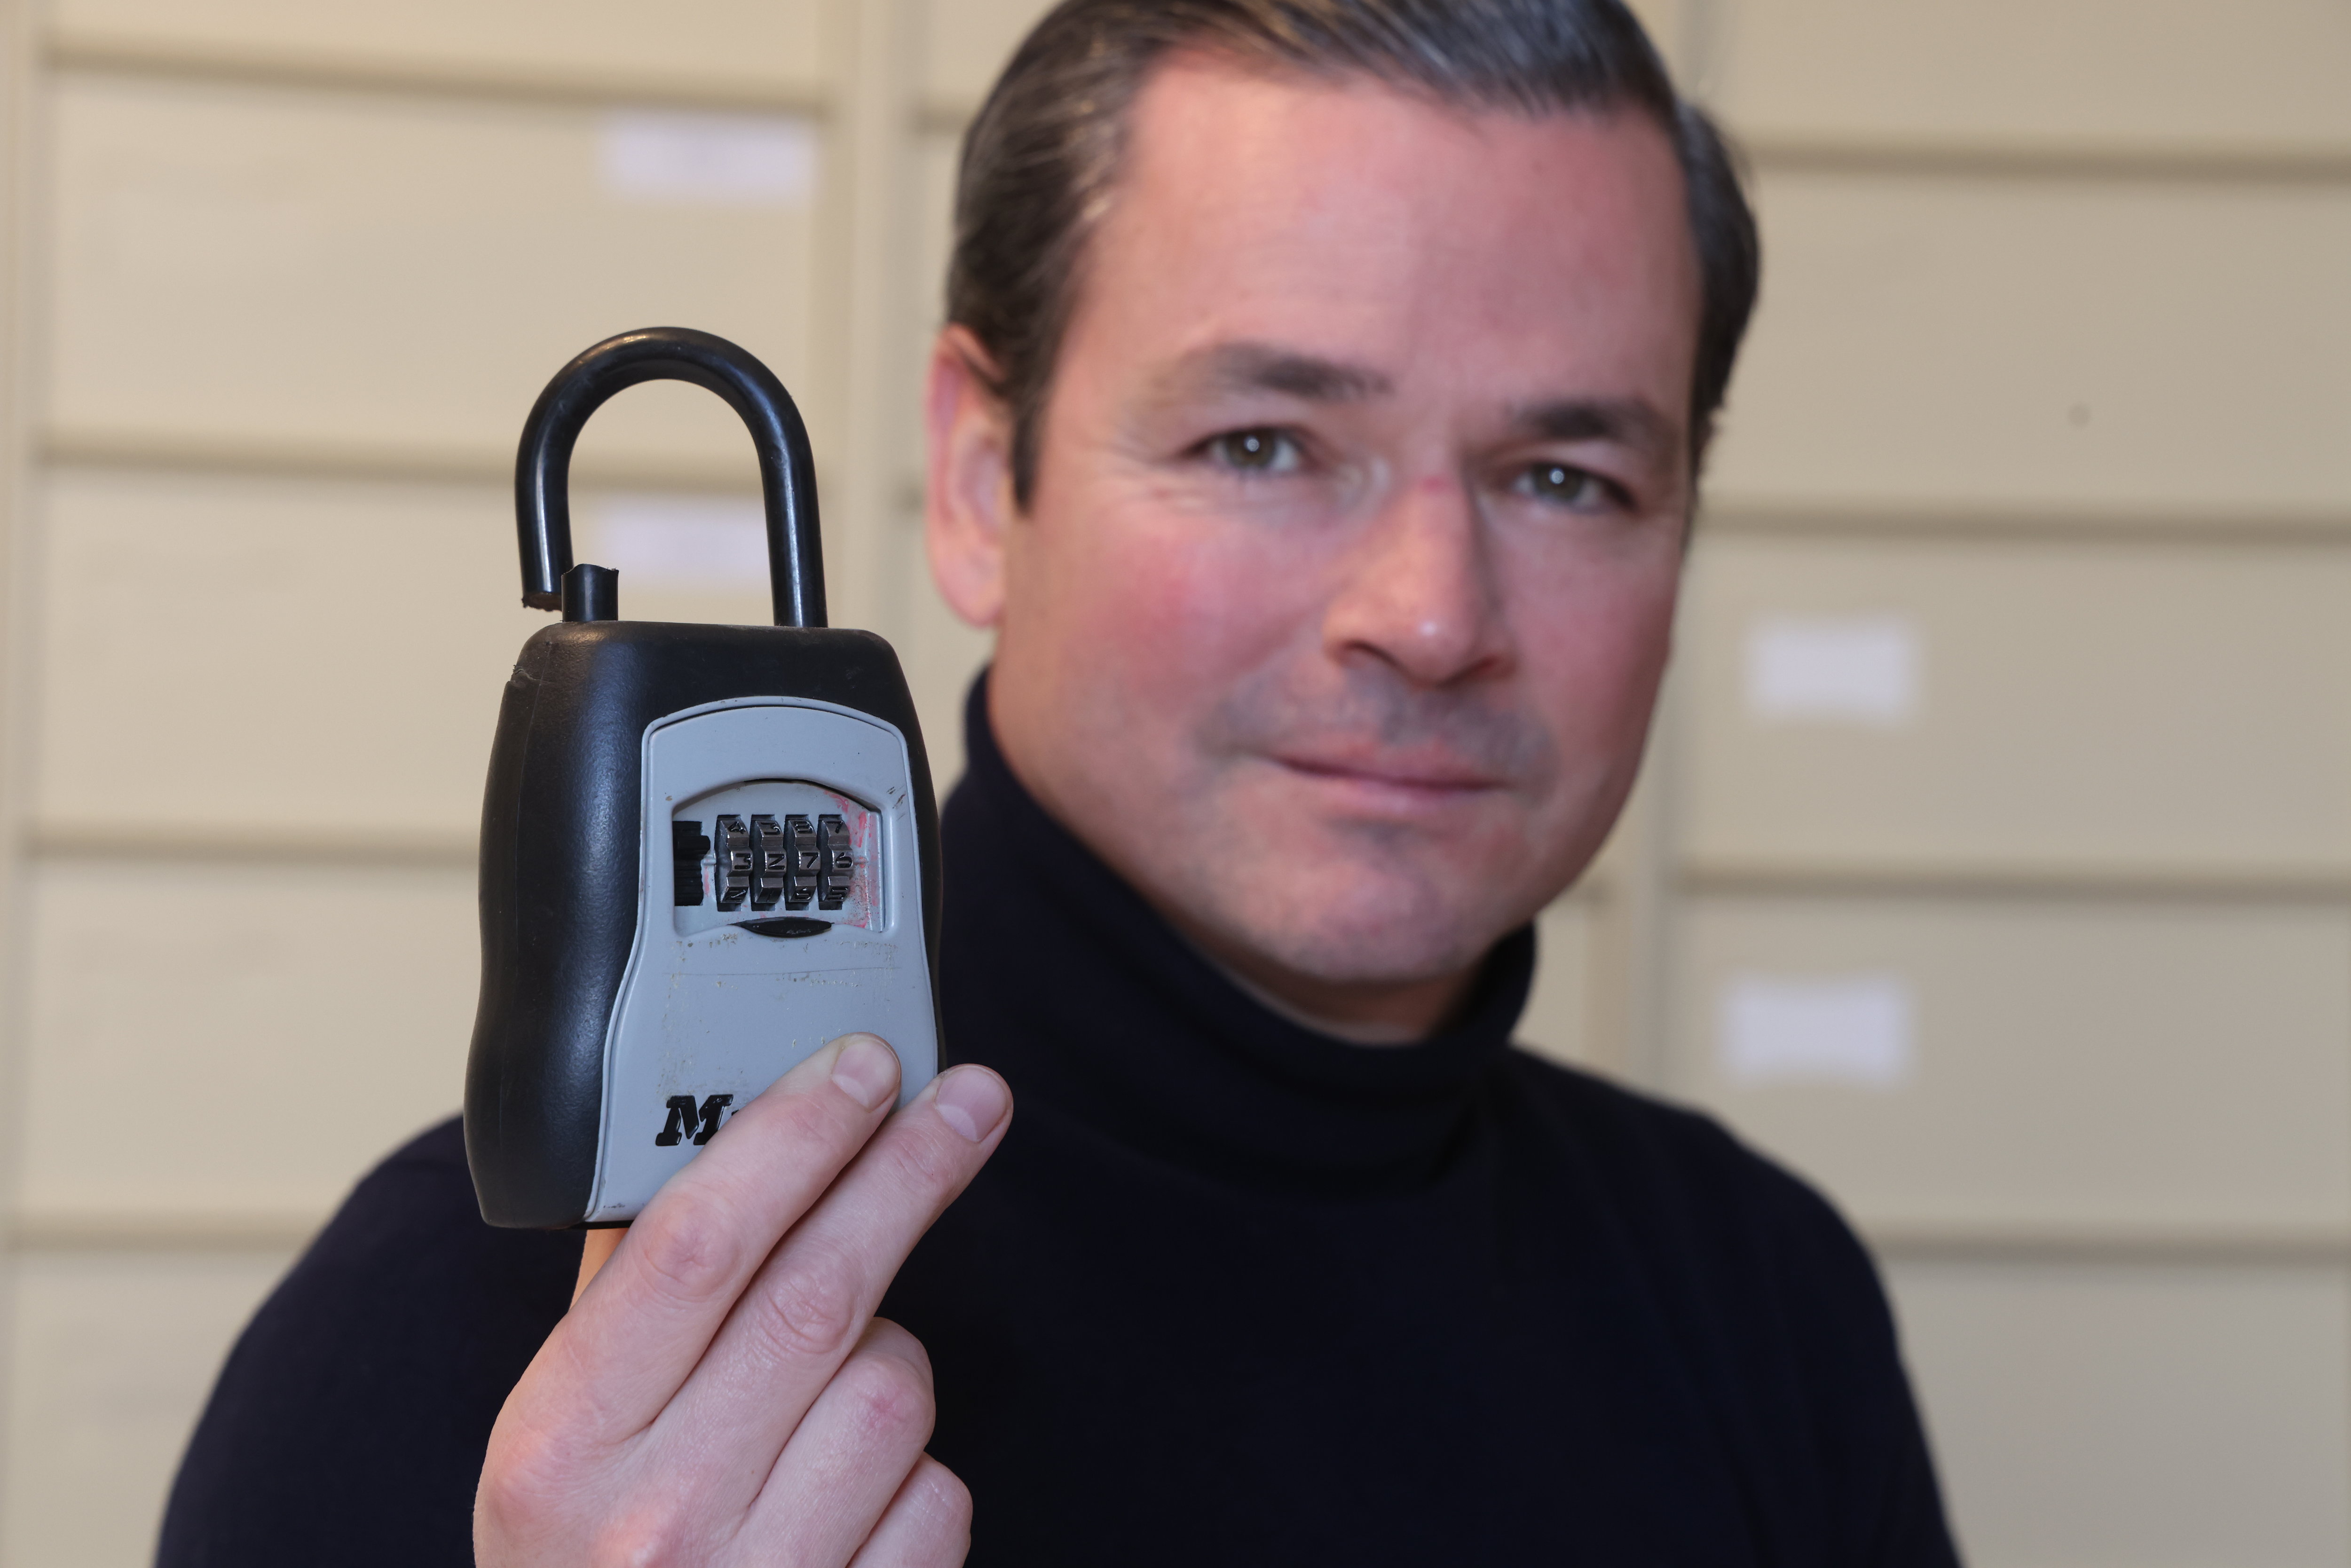 Gilles Frémont, gestionnaire de copropriété, constate que ces boîtes à clés installées illégalement se trouvent le plus souvent «aux derniers étages, là où les copropriétaires se rendent rarement». LP/Philippe Lavieille